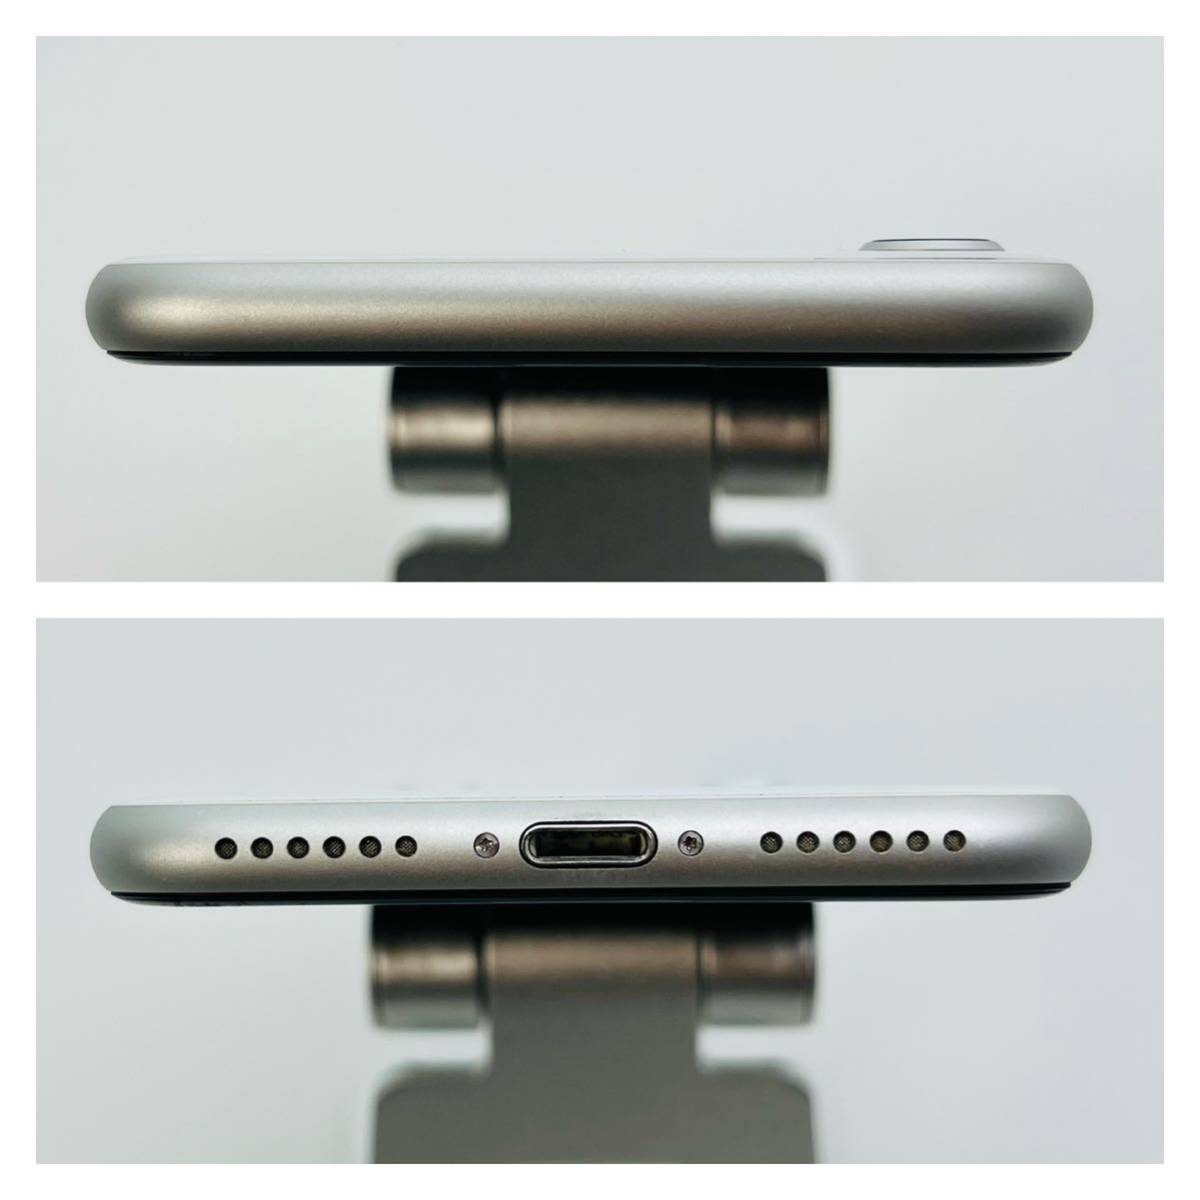 携帯電話、スマートフォン B iPhone SE 第2世代 (SE2) ホワイト 128GB SIMフリー 価格販売中